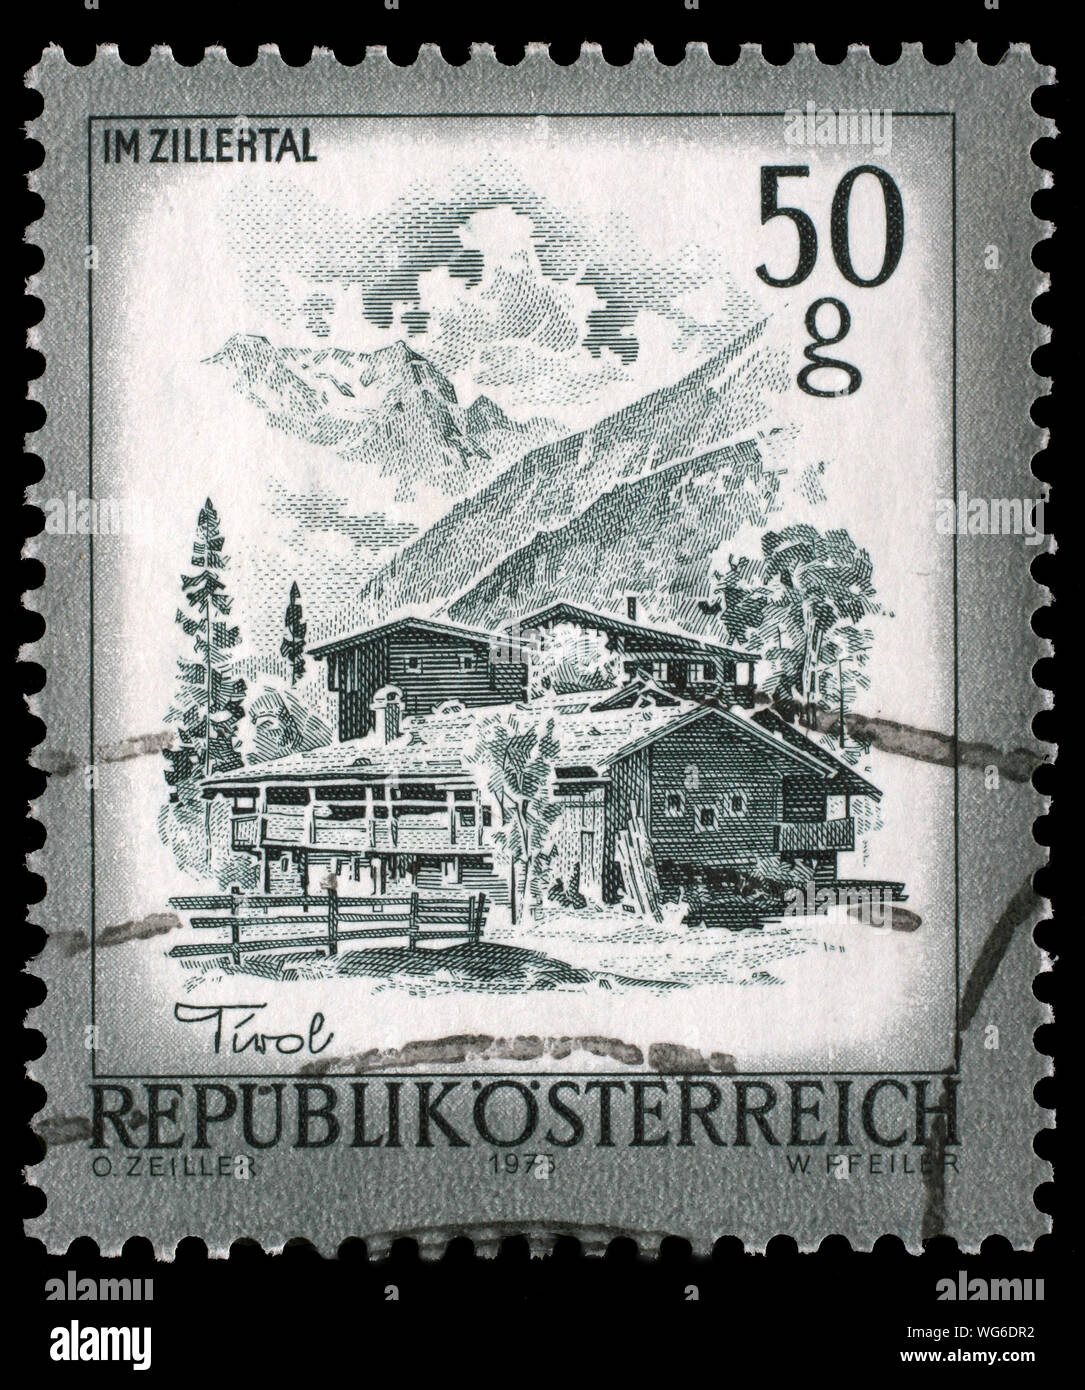 Stempel gedruckt in Österreich zeigt Bauernhäuser, Zillertal, Tirol, Serie "Österreich Sehenswürdigkeiten', circa 1976. Stockfoto